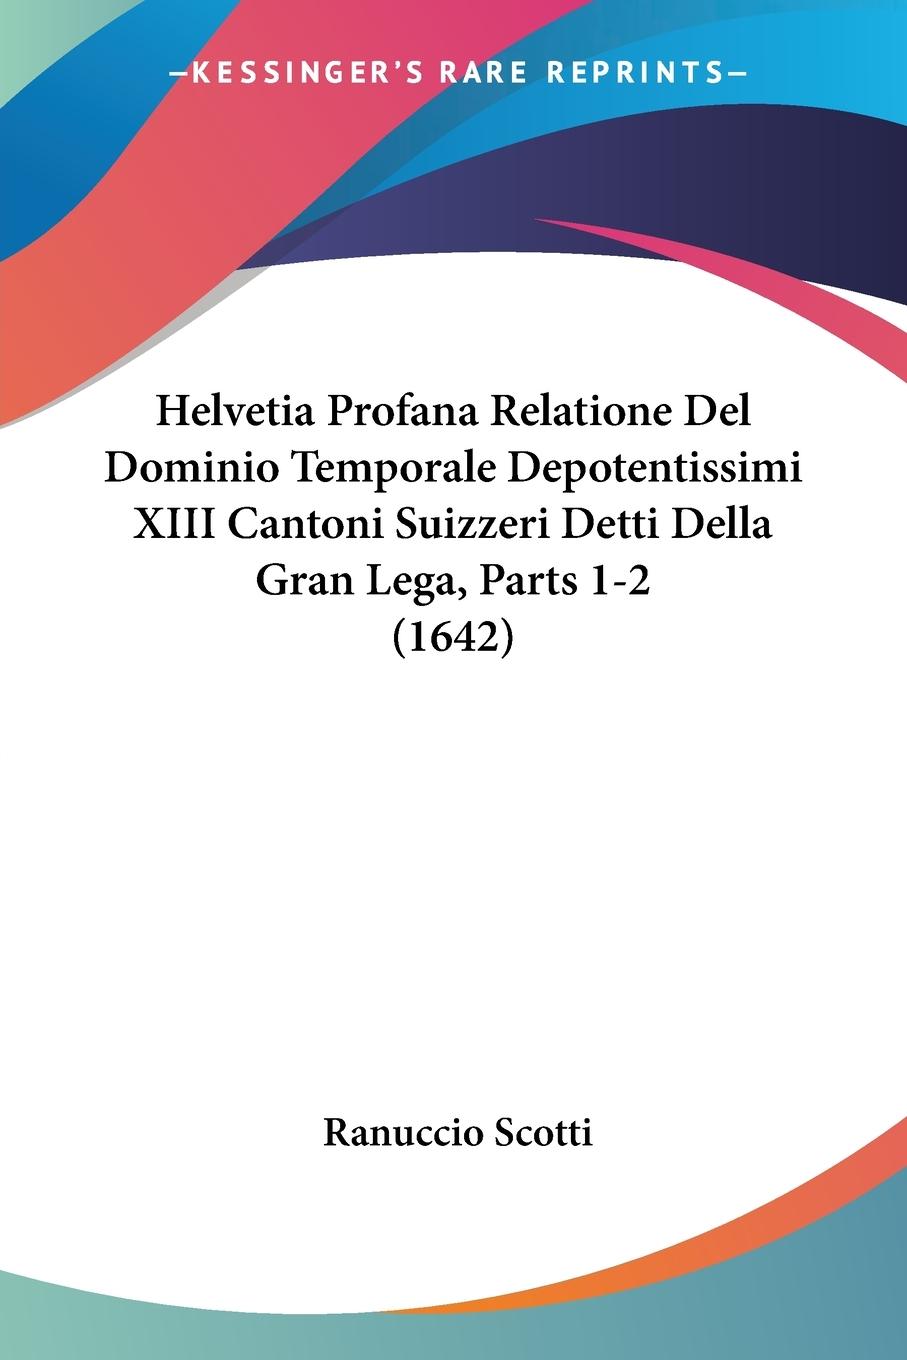 Helvetia Profana Relatione Del Dominio Temporale Depotentissimi XIII Cantoni Suizzeri Detti Della Gran Lega, Parts 1-2 (1642) - Scotti, Ranuccio